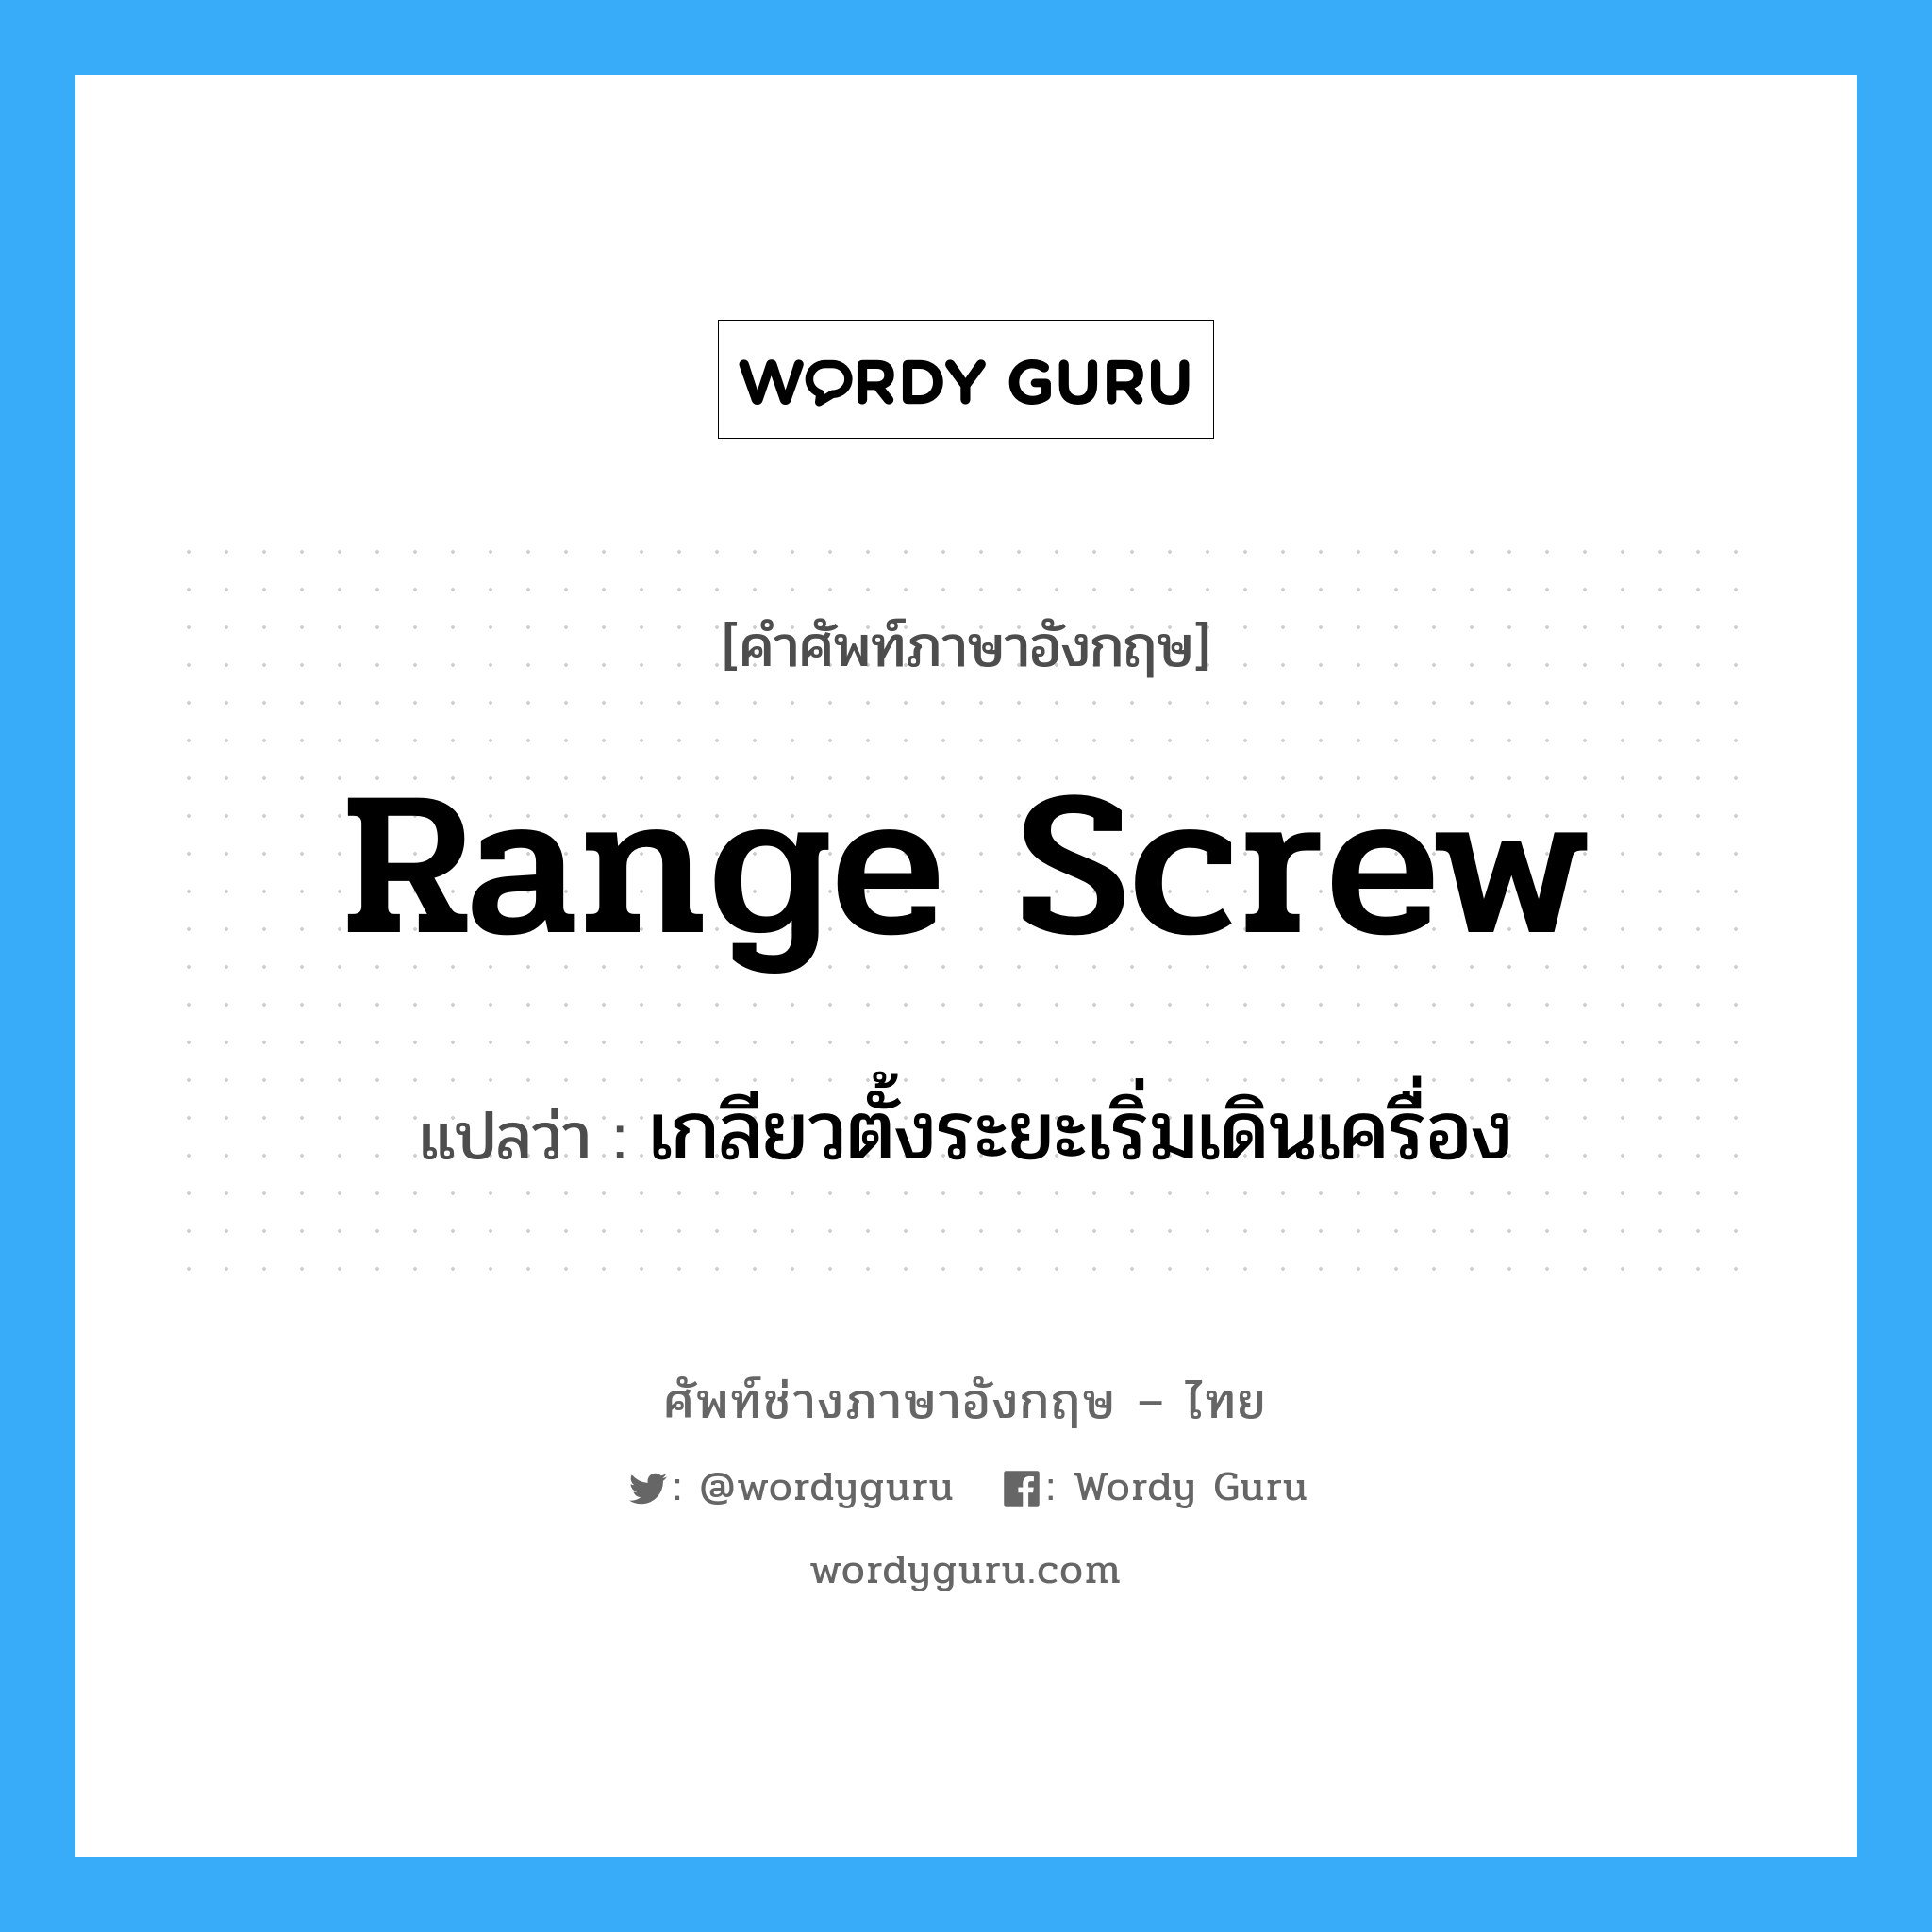 range screw แปลว่า?, คำศัพท์ช่างภาษาอังกฤษ - ไทย range screw คำศัพท์ภาษาอังกฤษ range screw แปลว่า เกลียวตั้งระยะเริ่มเดินเครื่อง